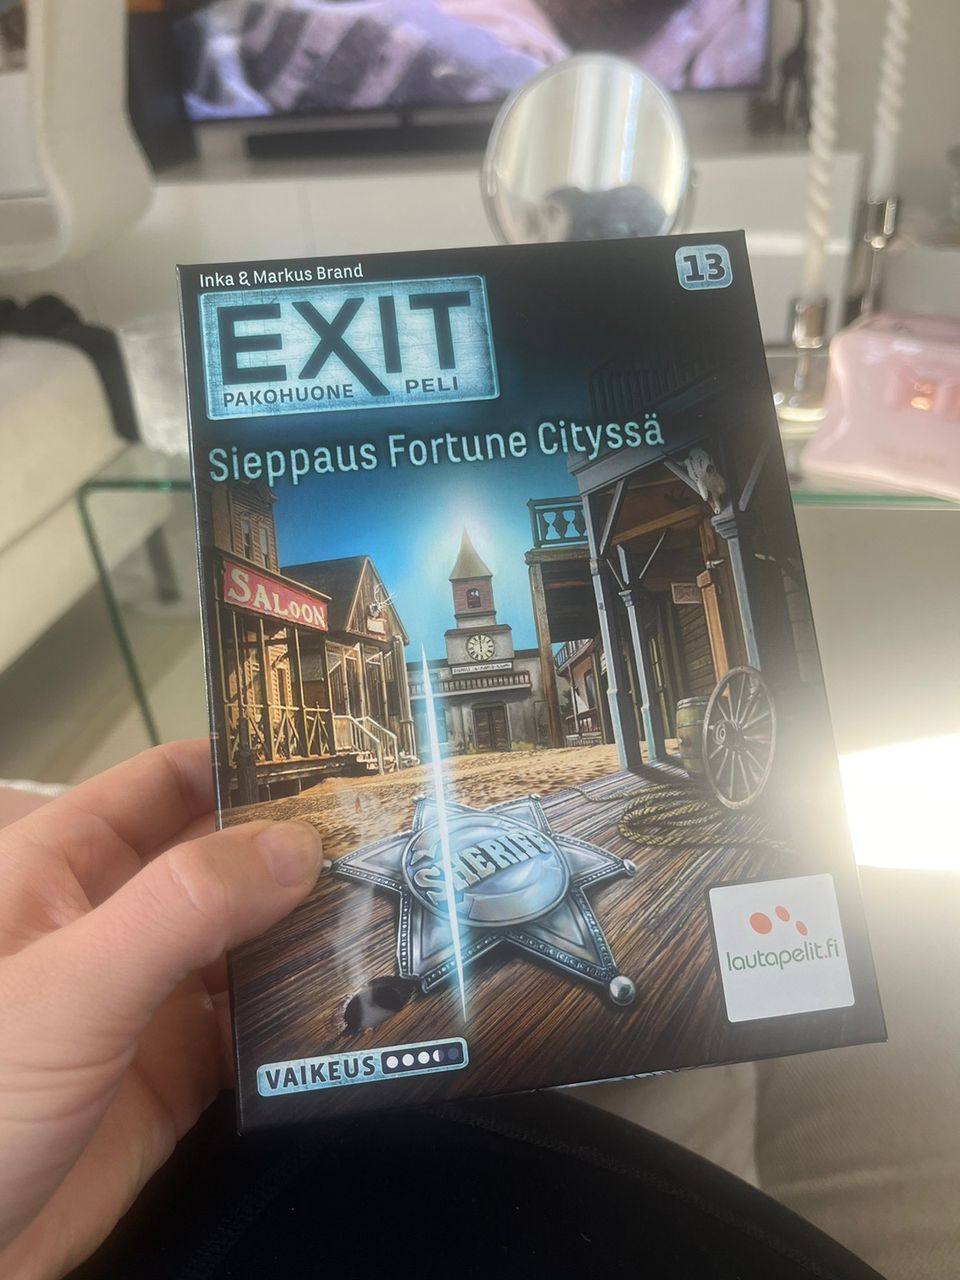 Exit sieppaus fortune cityssä